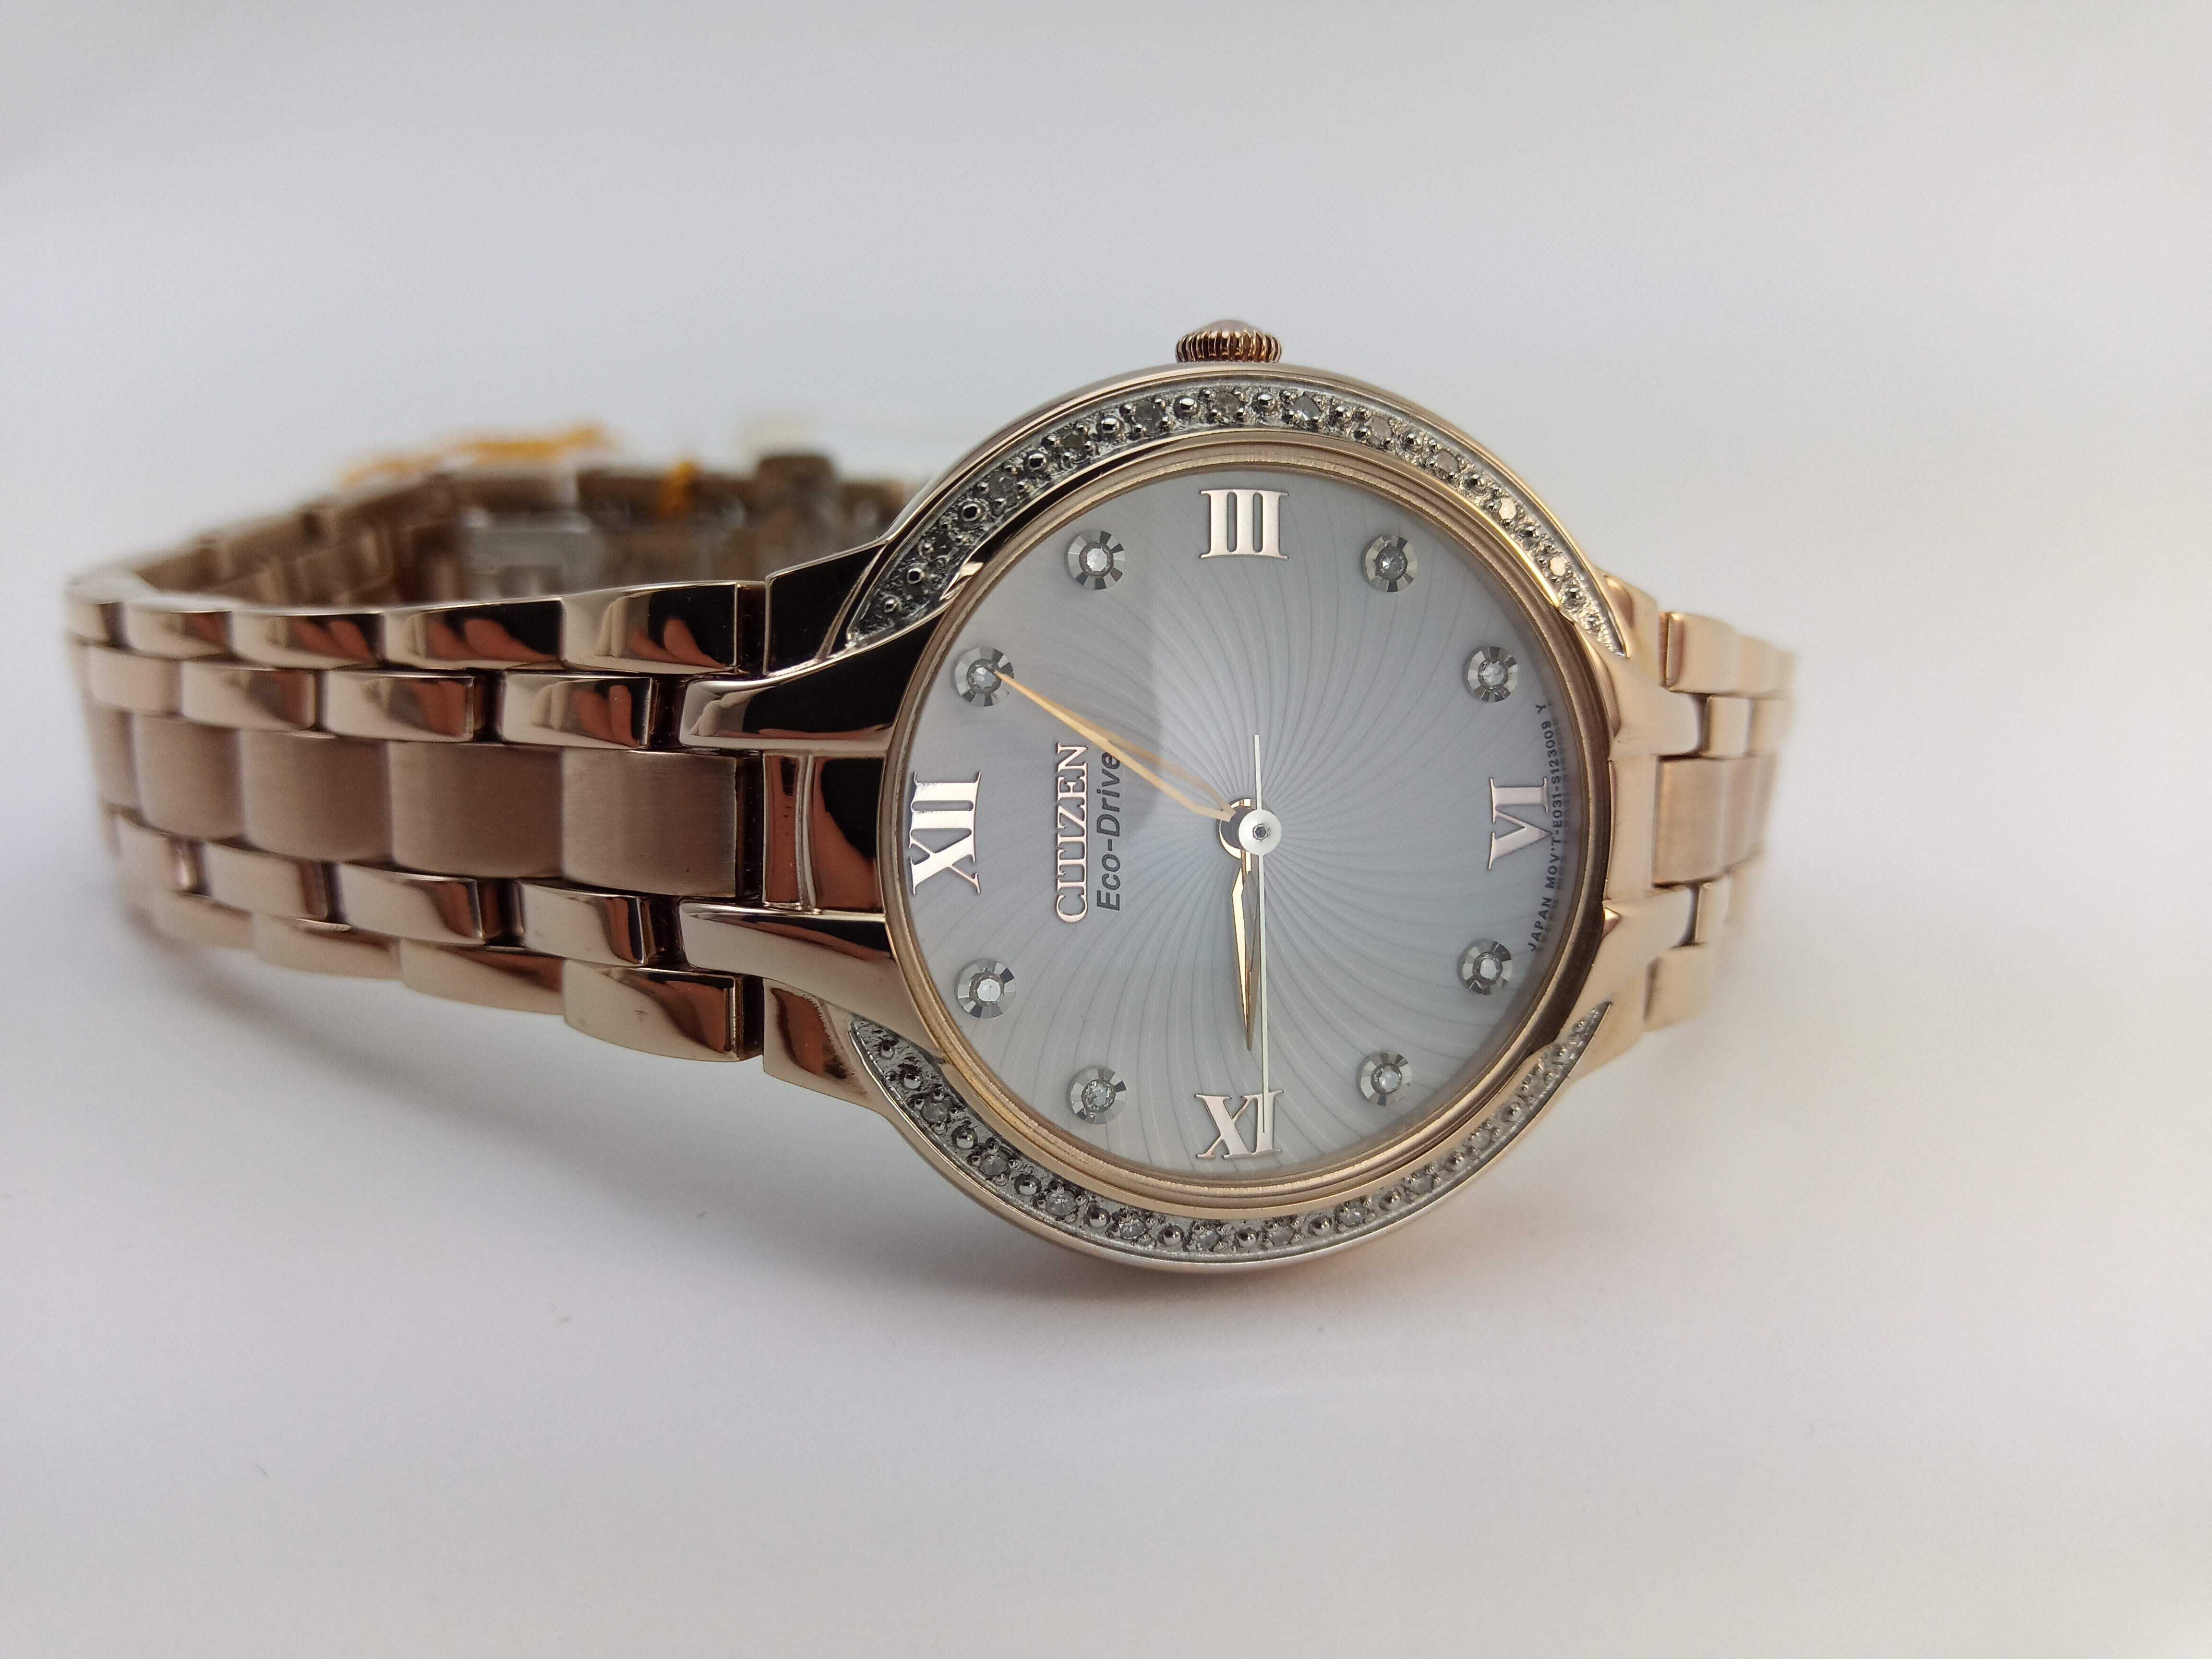 Женские часы Citizen Eco-Drive EM0123-50A. 28 бриллиантов, сапфир $495